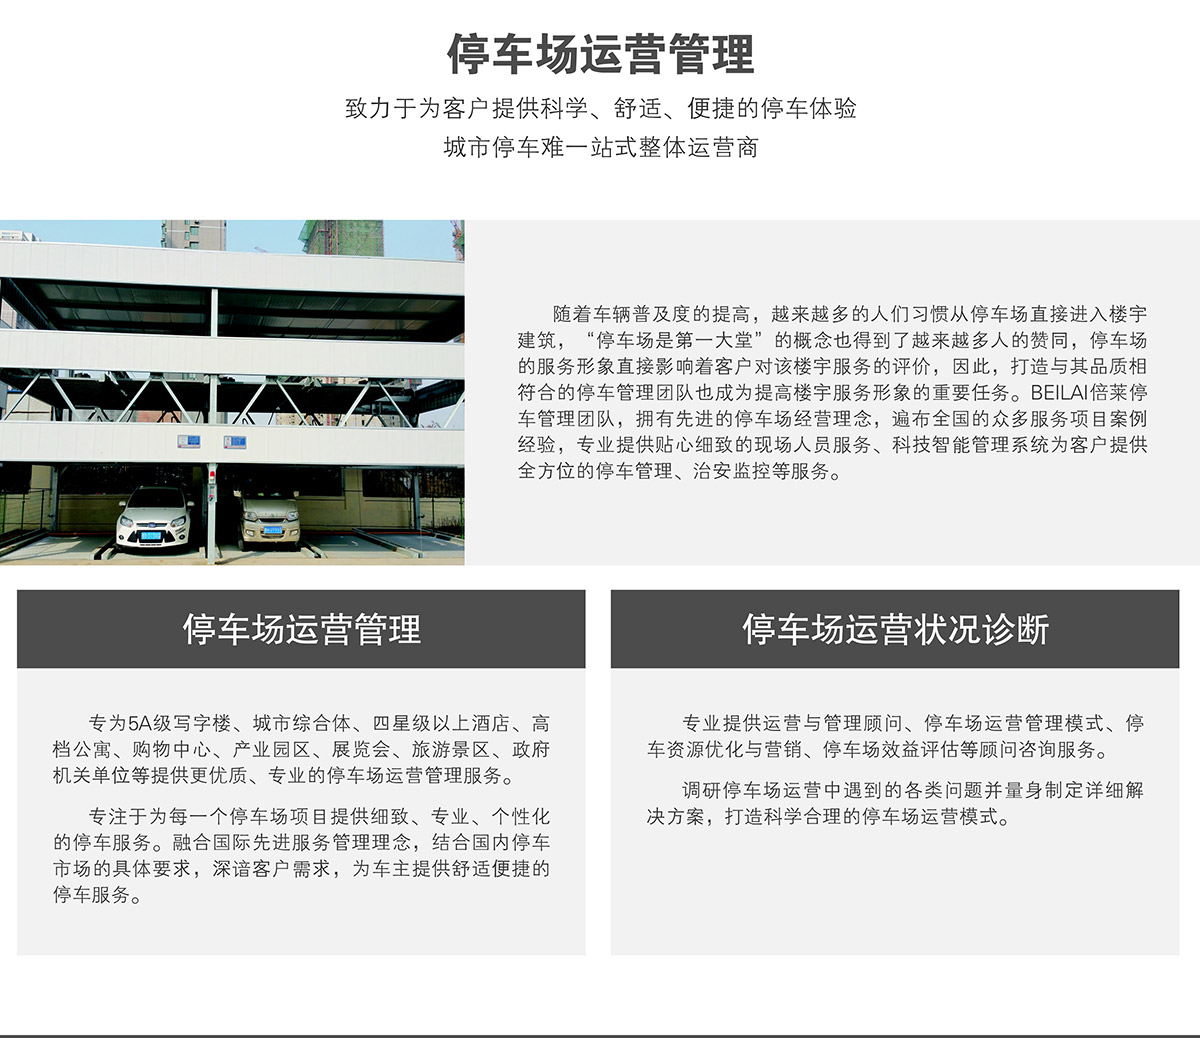 贵阳停车场运营管理为客户提供科学舒适便捷的停车体验.jpg